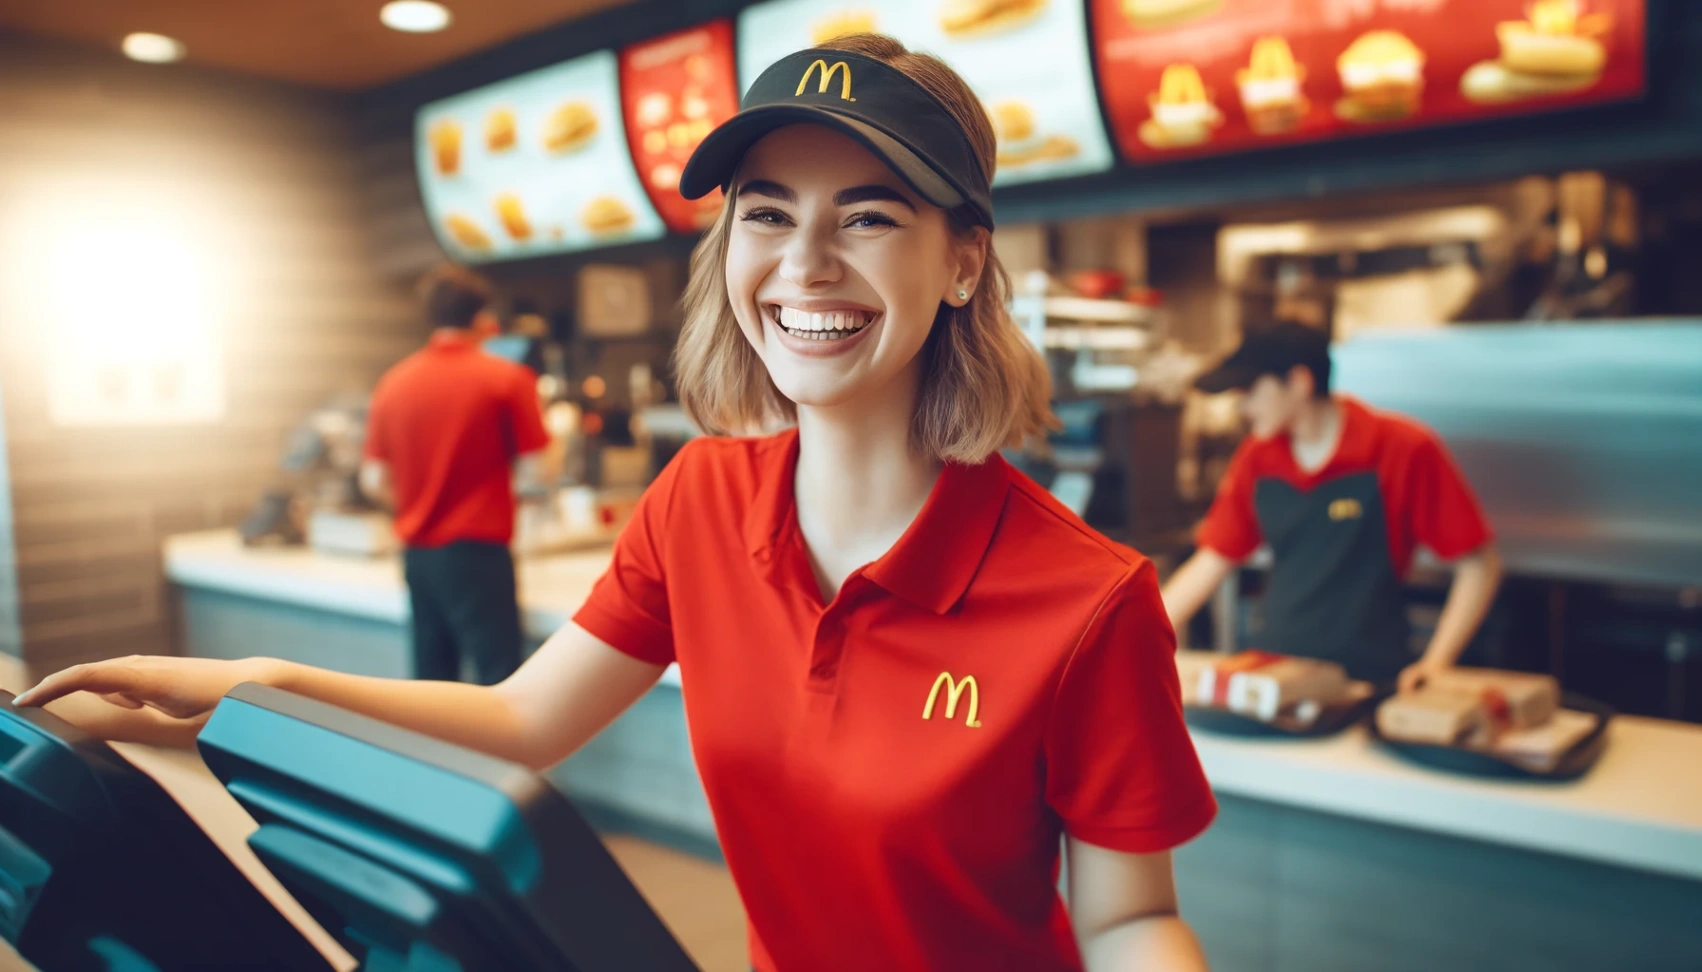 McDonald's Darbo Užklausa: Jūsų kelią į įdomias galimybes